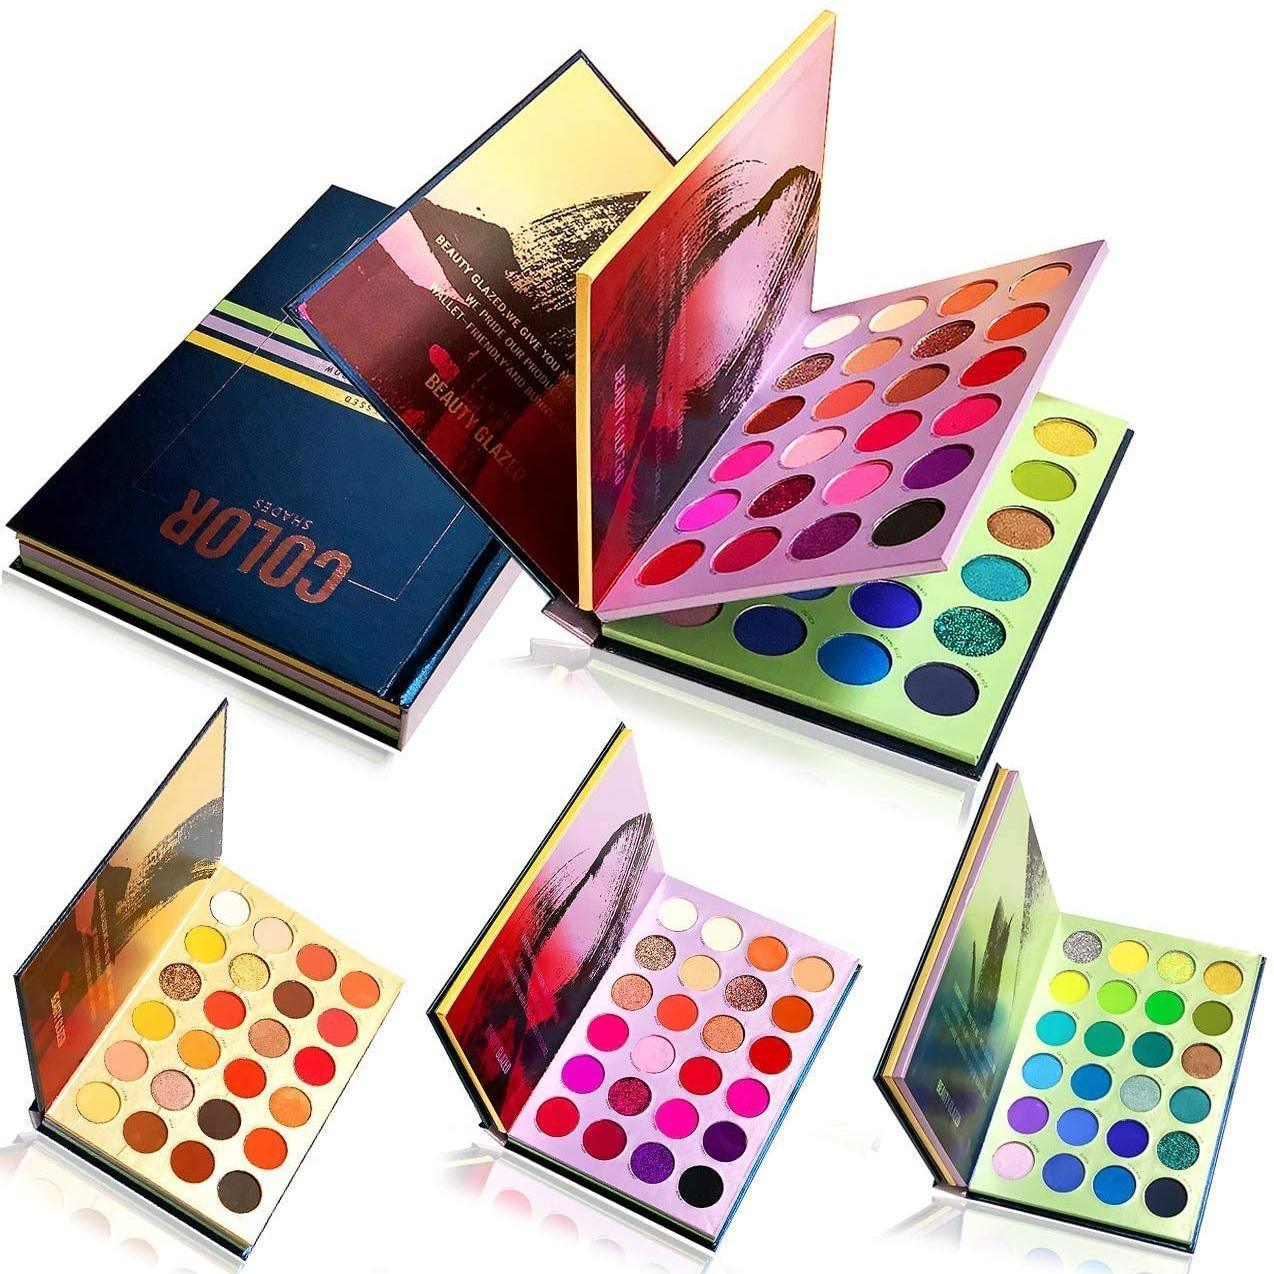 72 Color Press Lidschatten-Palette. Buch-Schattenpalette 